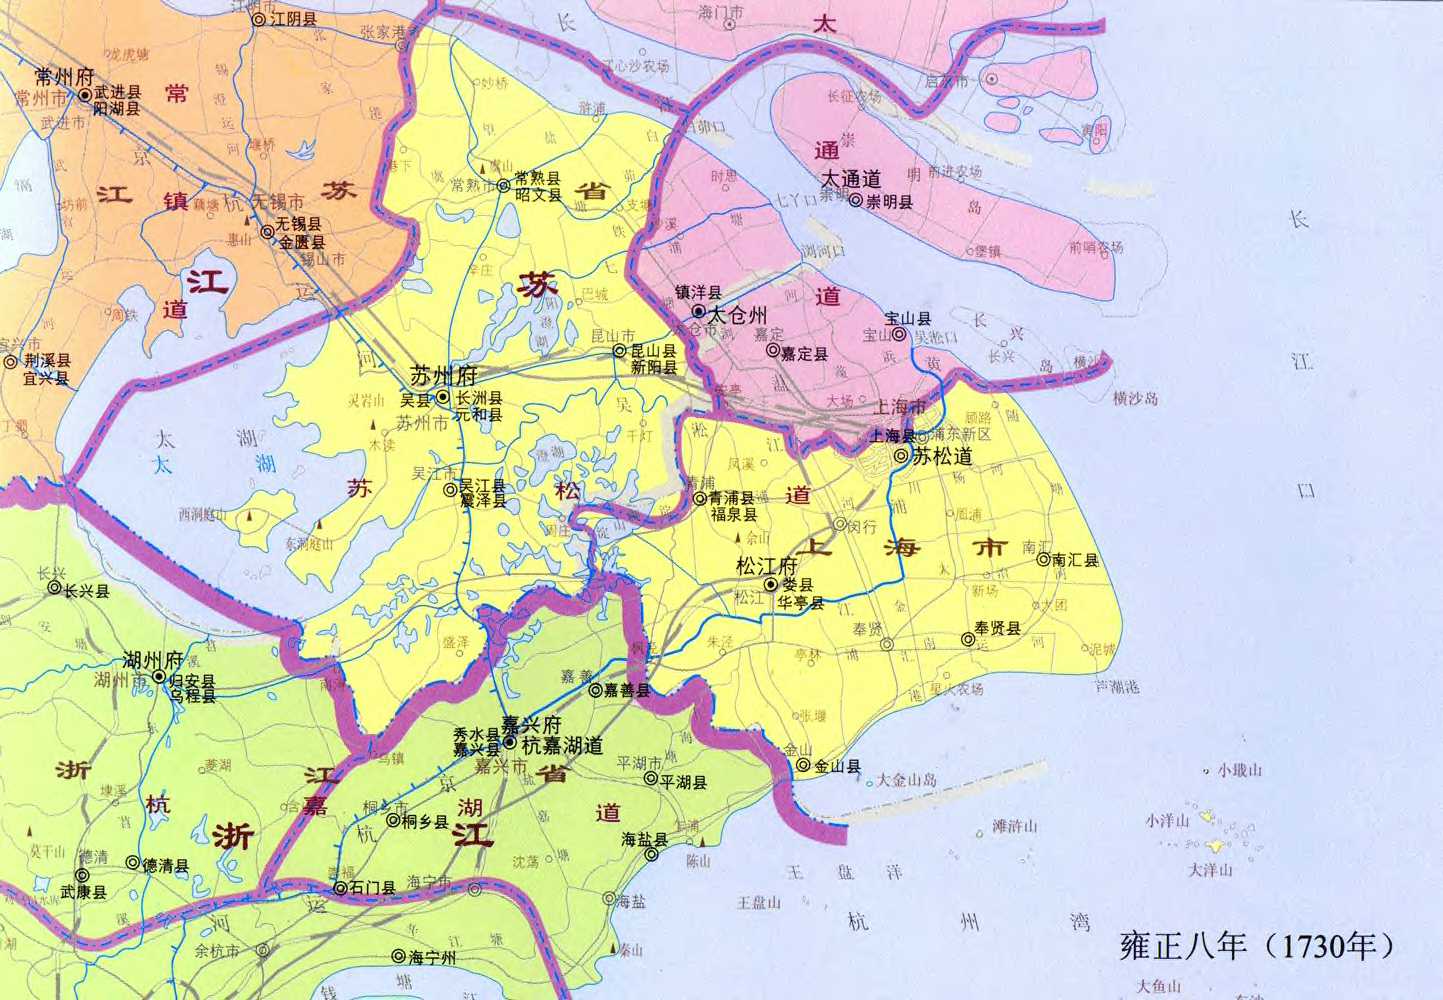 【精华】对照旧上海地图,看看你家当年坐落在